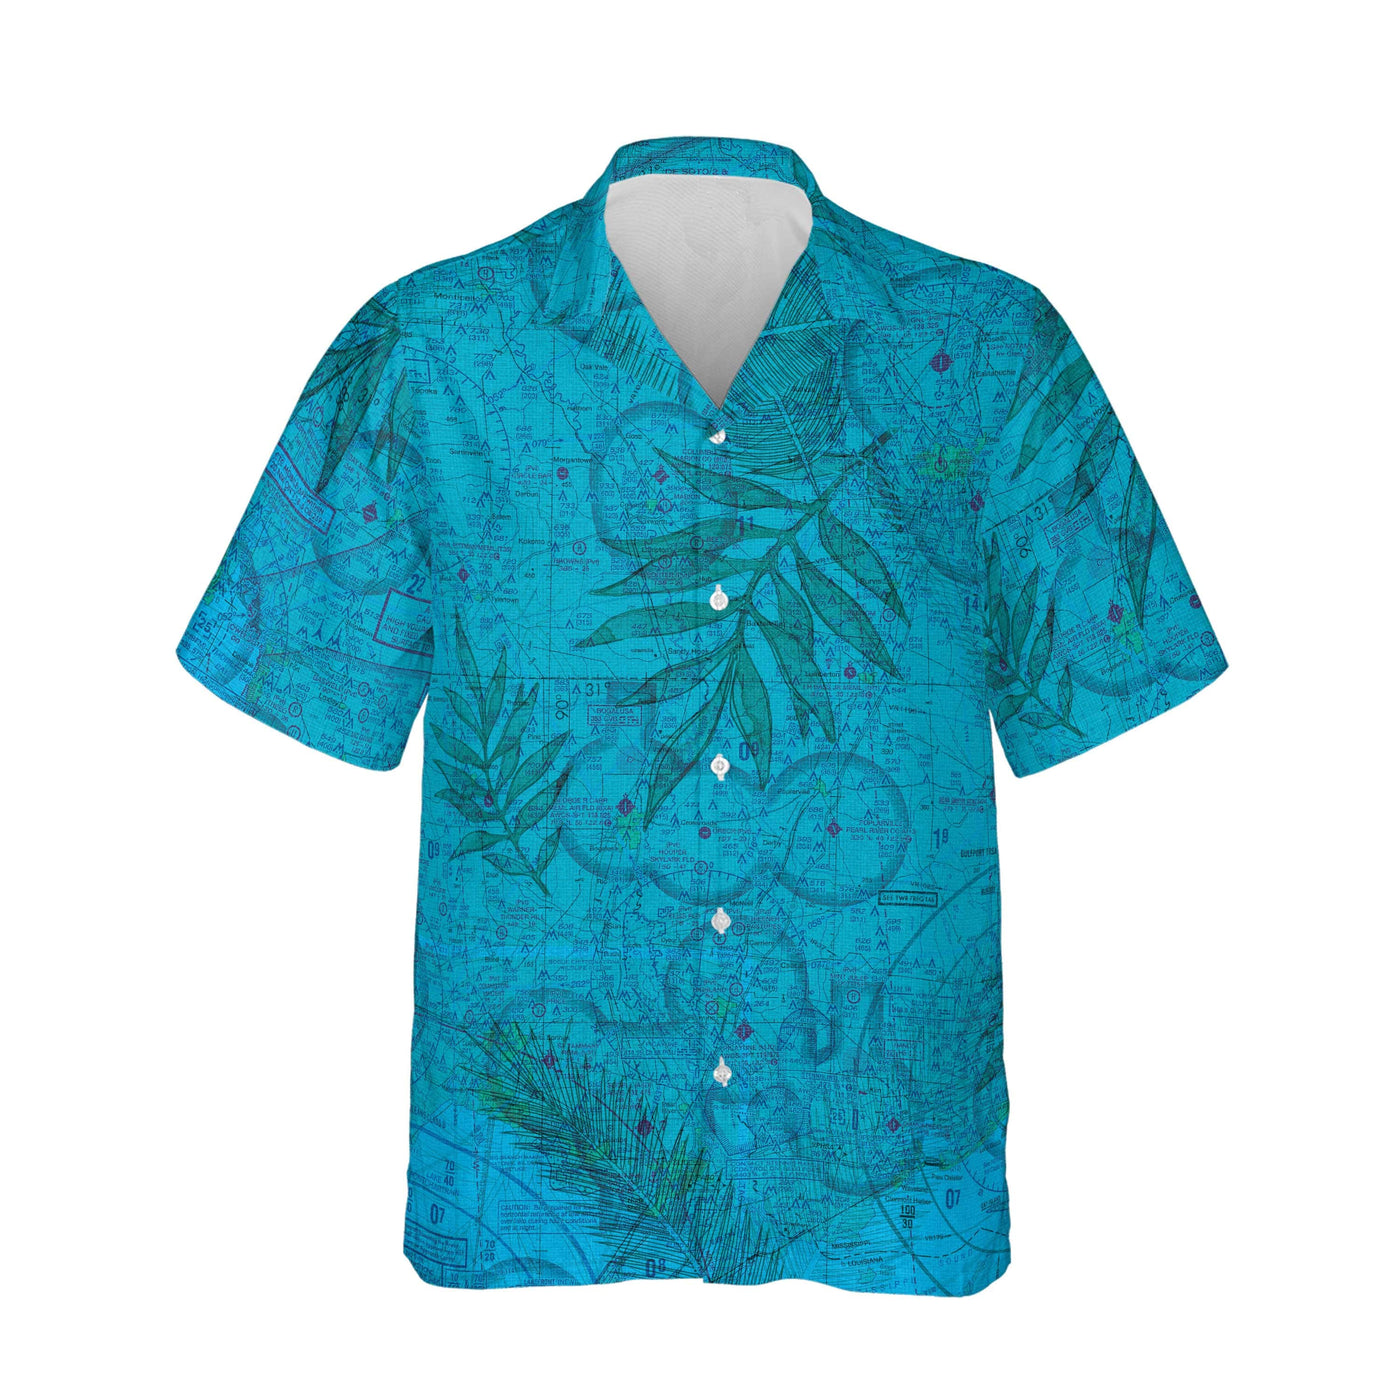 AOP Hawaiian Shirt The New Orleans Blues Shirt